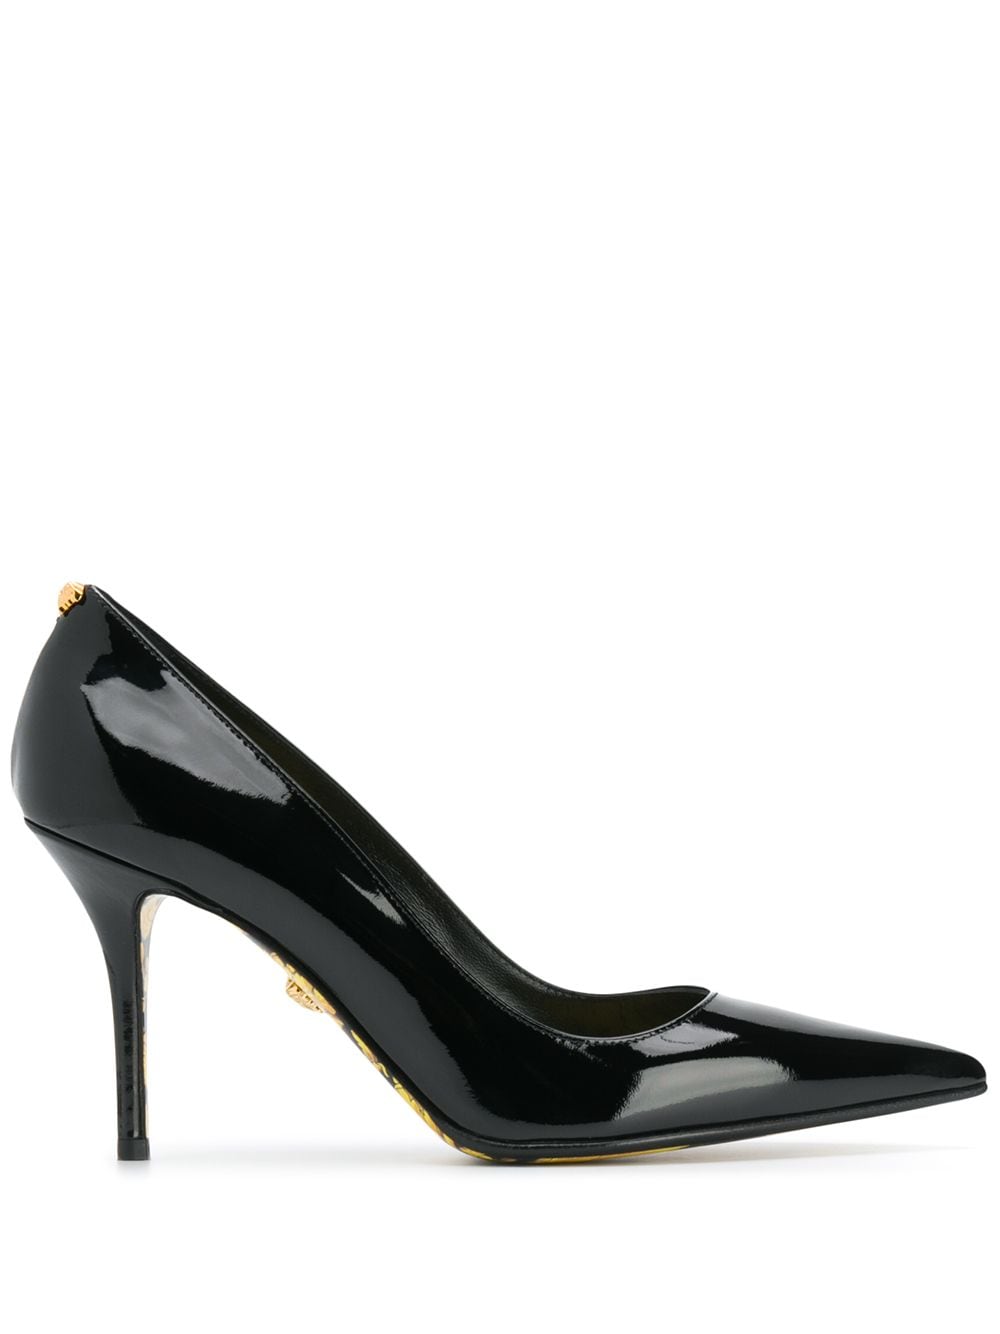 фото Versace туфли с принтом barocco на подкладке